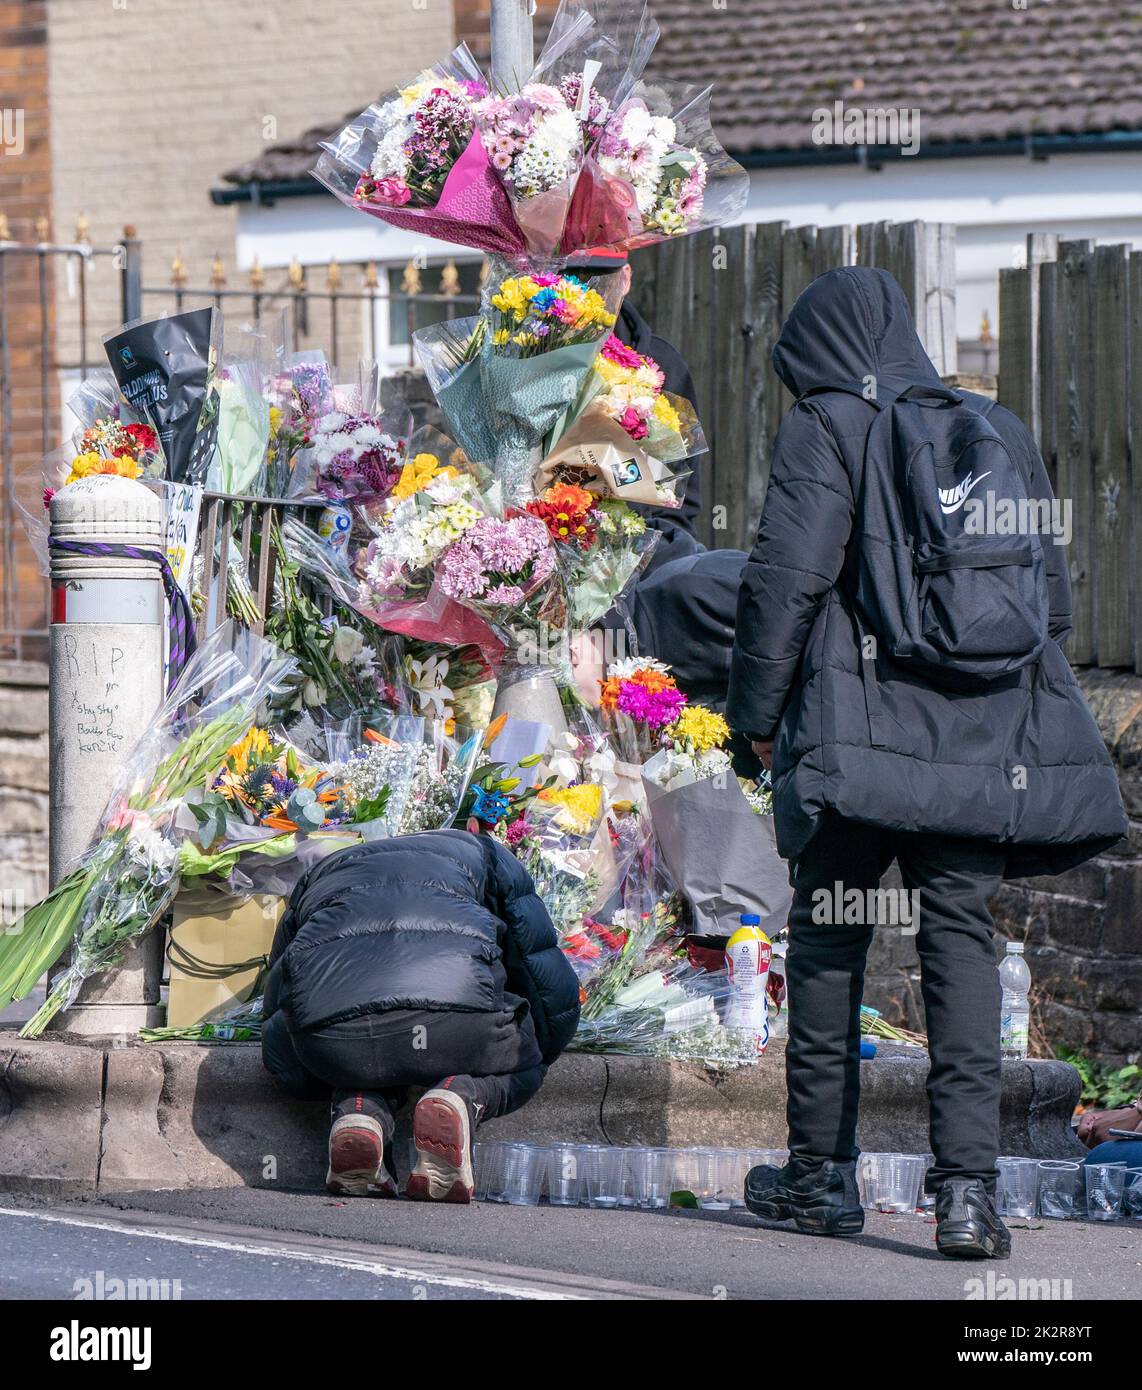 Los alumnos ven tributos florales en la escena en Woodhouse Hill, Huddersfield, donde Khayri McLean, un colegial de 15 años, fue apuñalado fatalmente fuera de las puertas de su escuela. Fecha de la foto: Viernes 23 de septiembre de 2022. Foto de stock